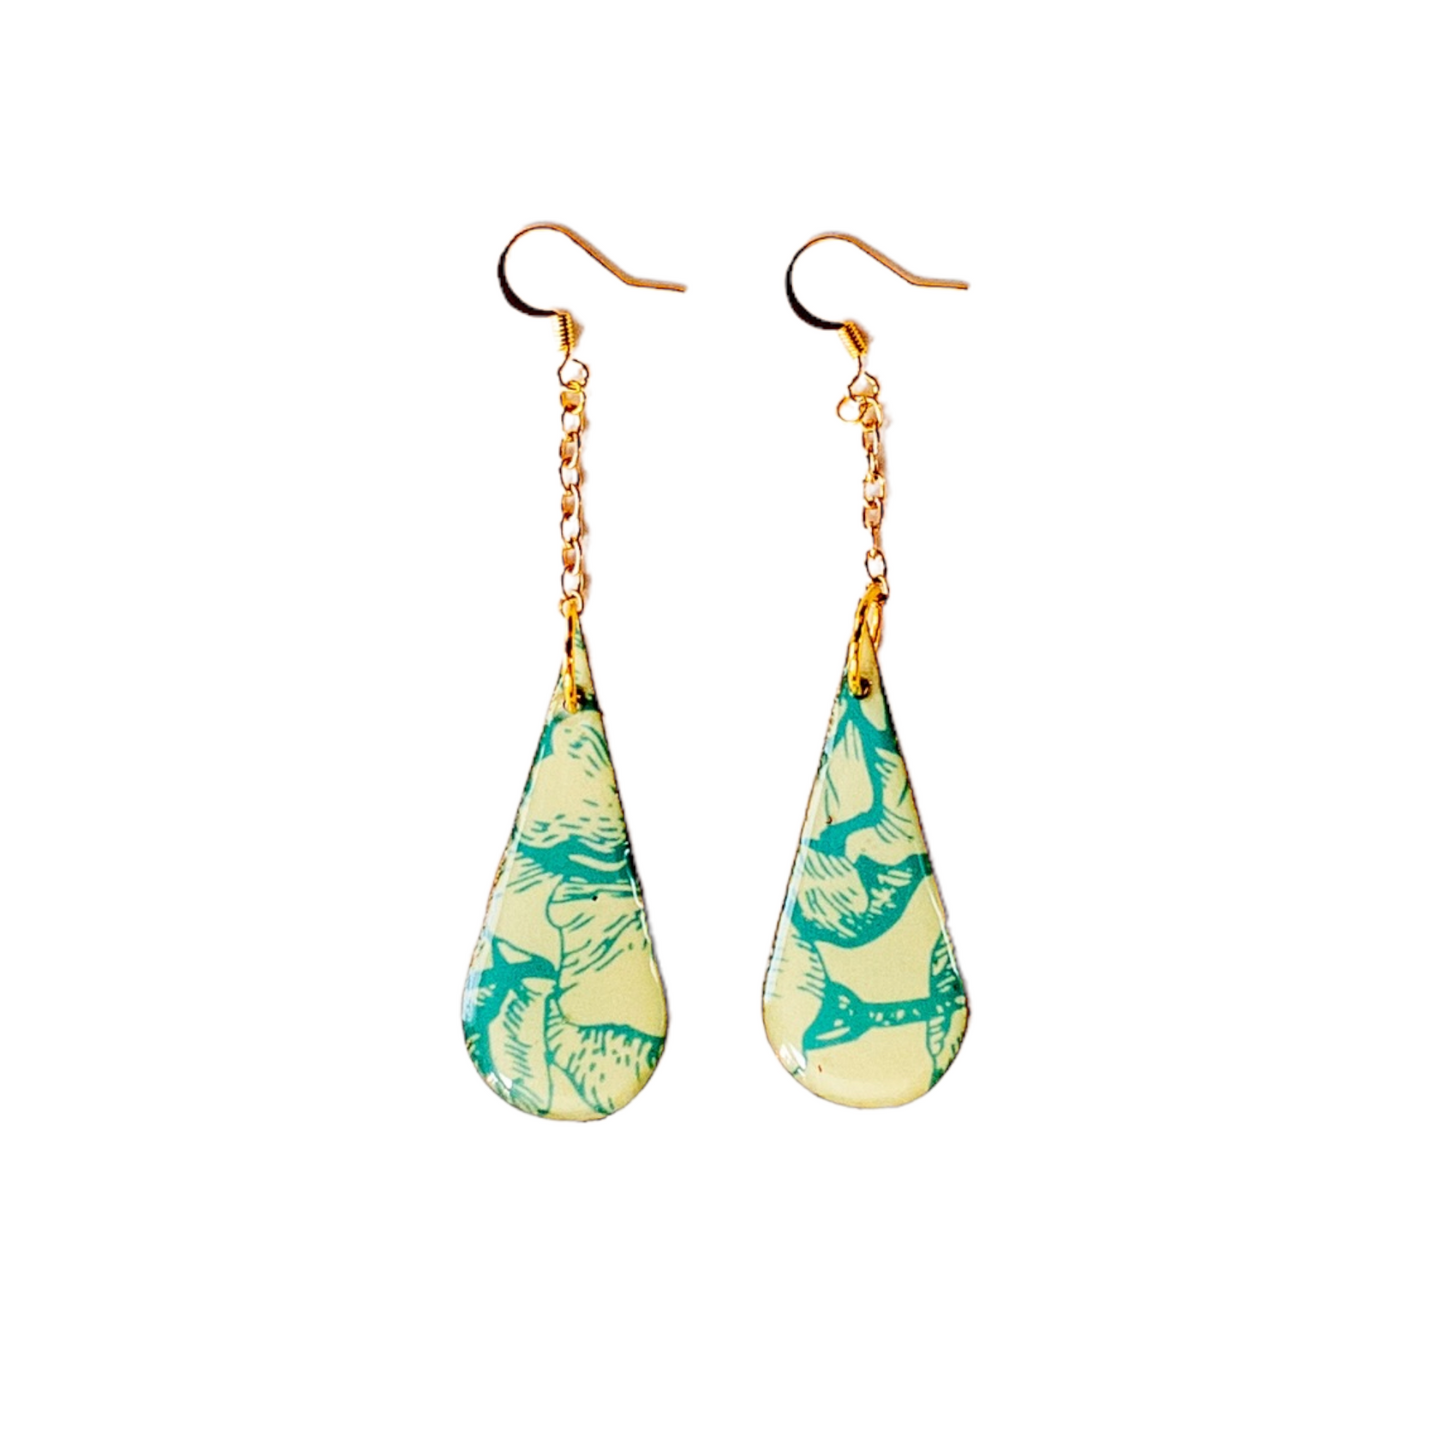 Tan & Mint Teardrop Flower Gold Chain Recycled Earrings